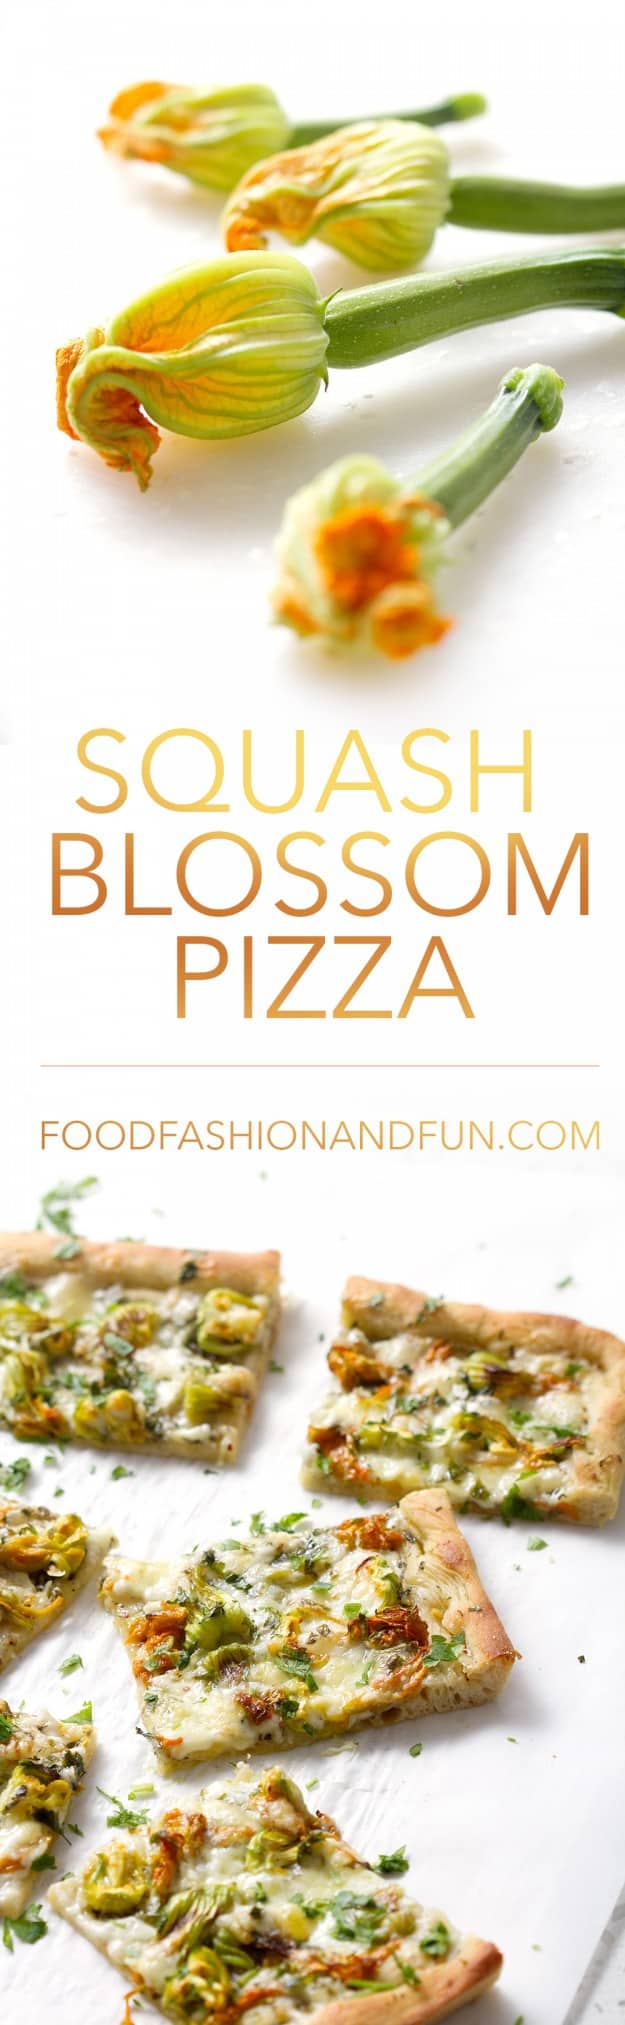 Squash Blossom Pizza